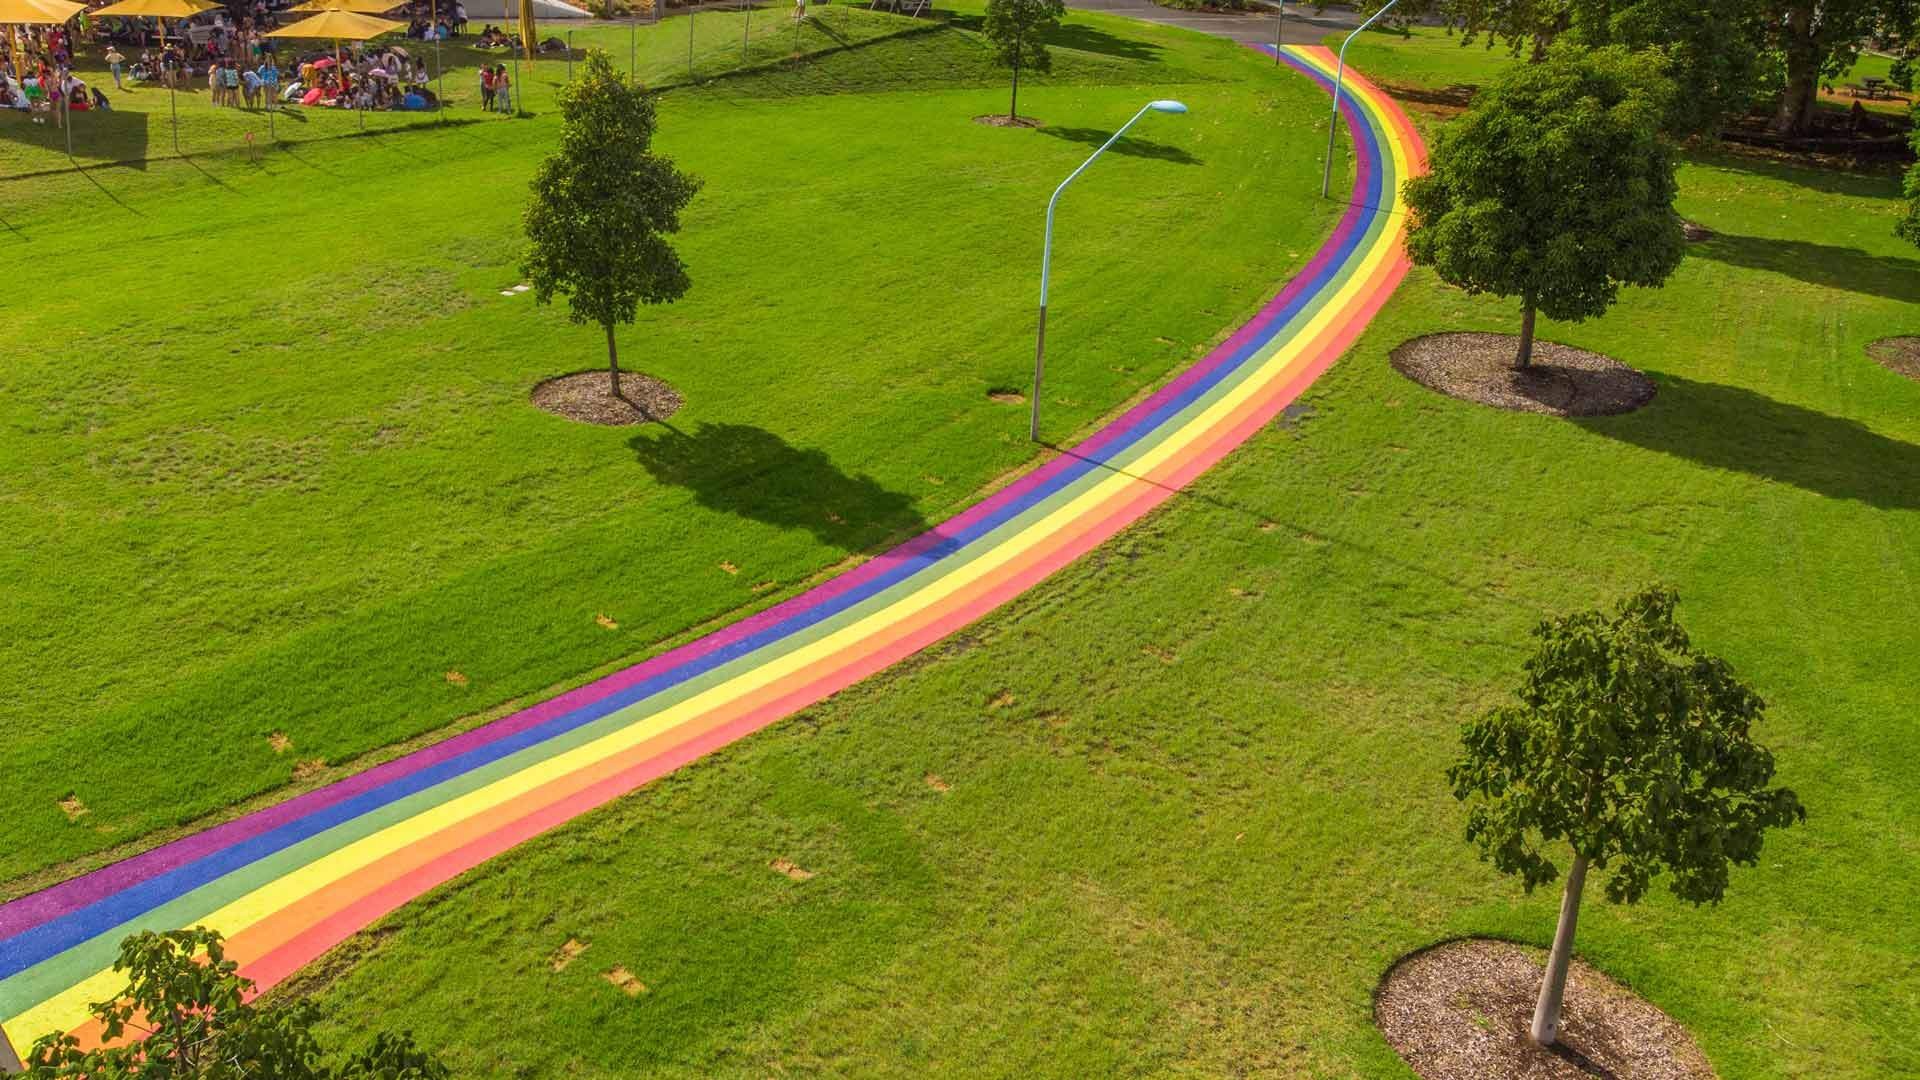 Austrália: Estrada arco-íris celebra legalização do casamento entre pessoas do mesmo sexo (Foto: Reprodução/Twitter)